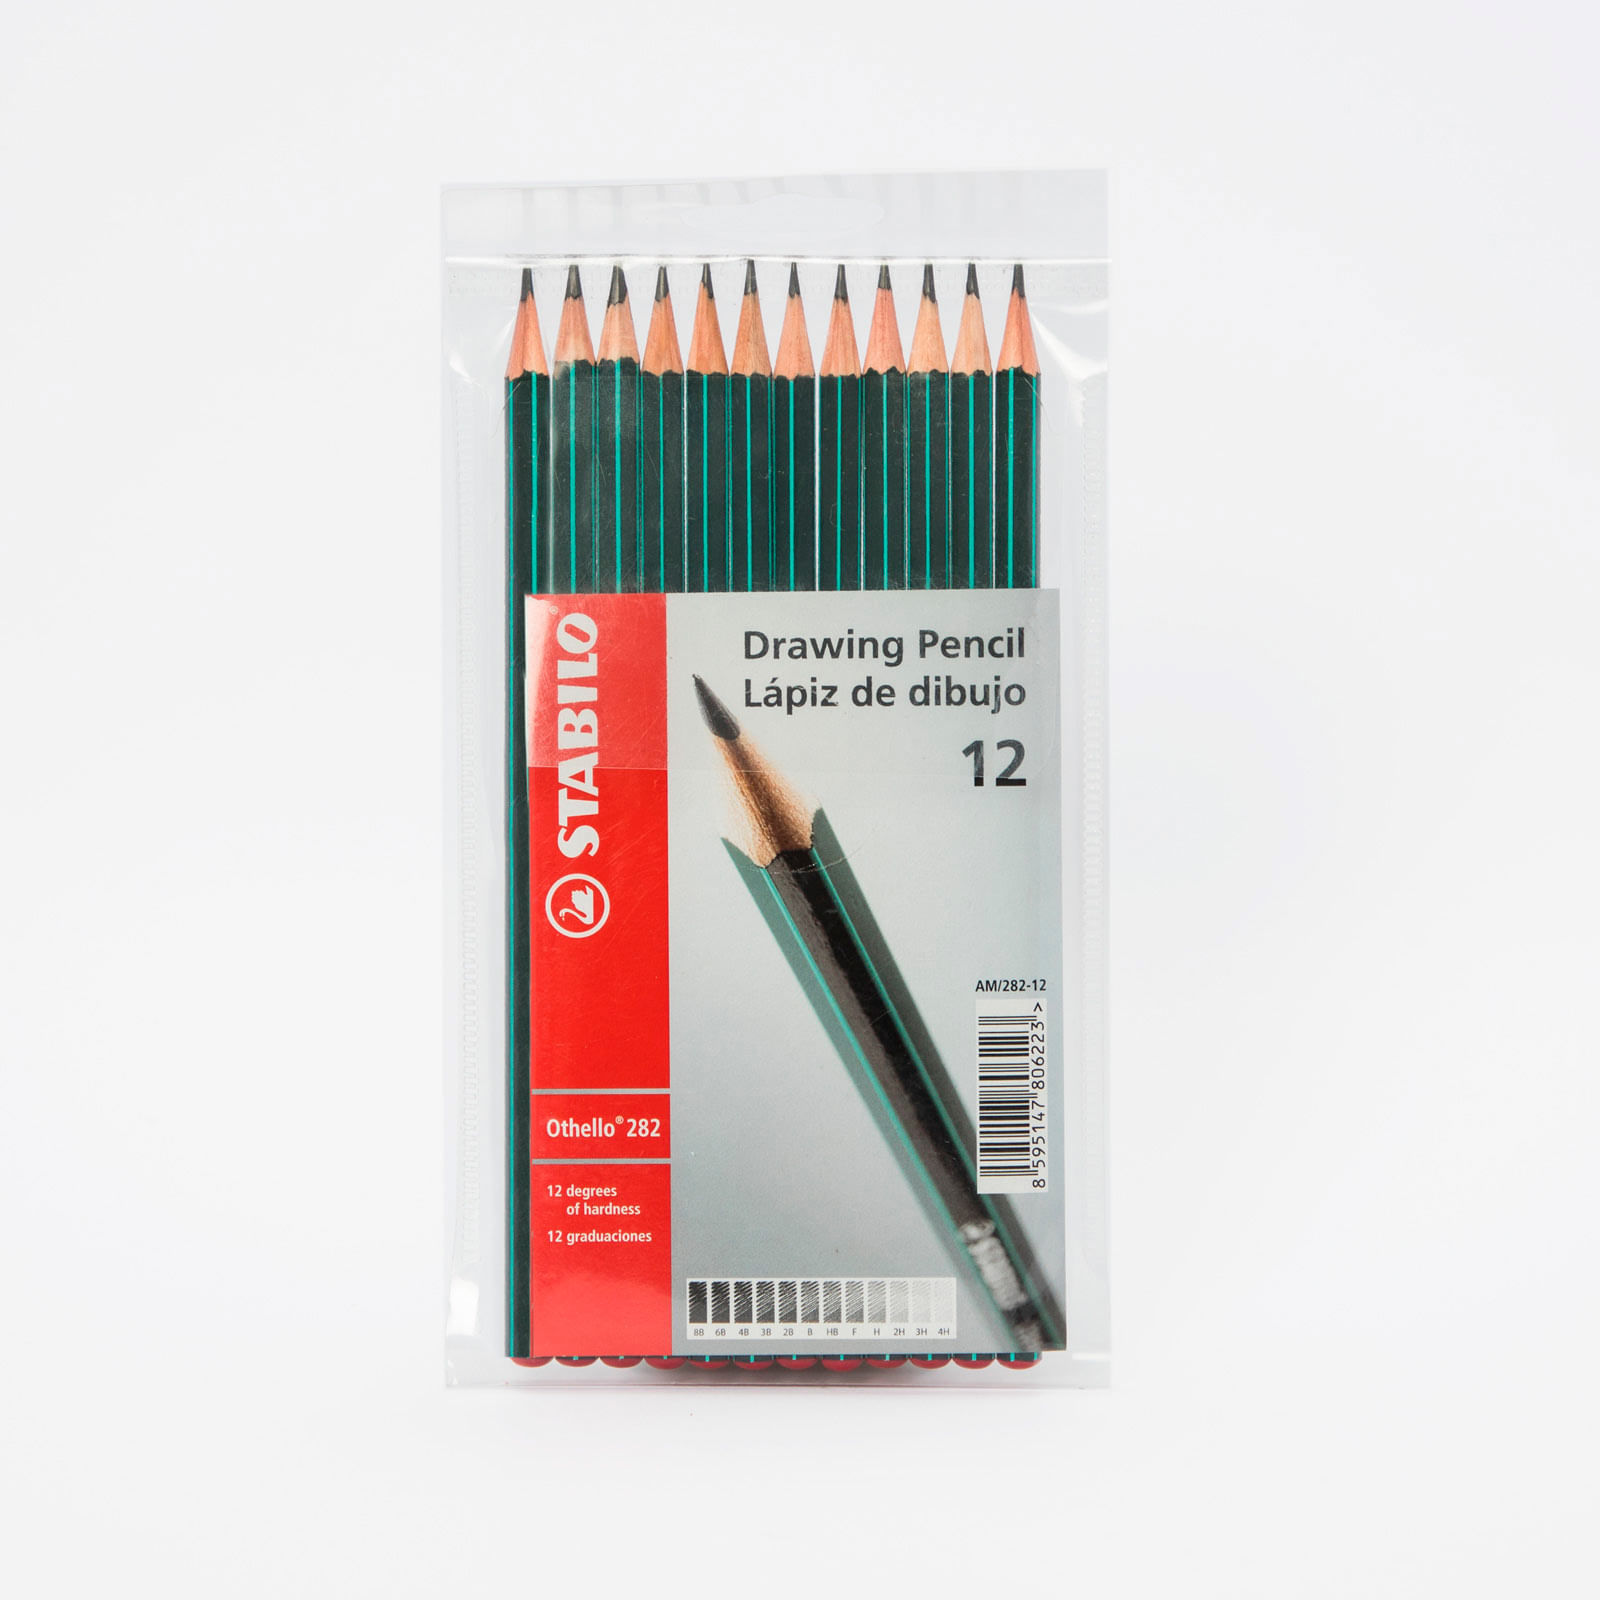 MISULOVE - Juego de lápices de dibujo profesional, 12 lápices de grafi